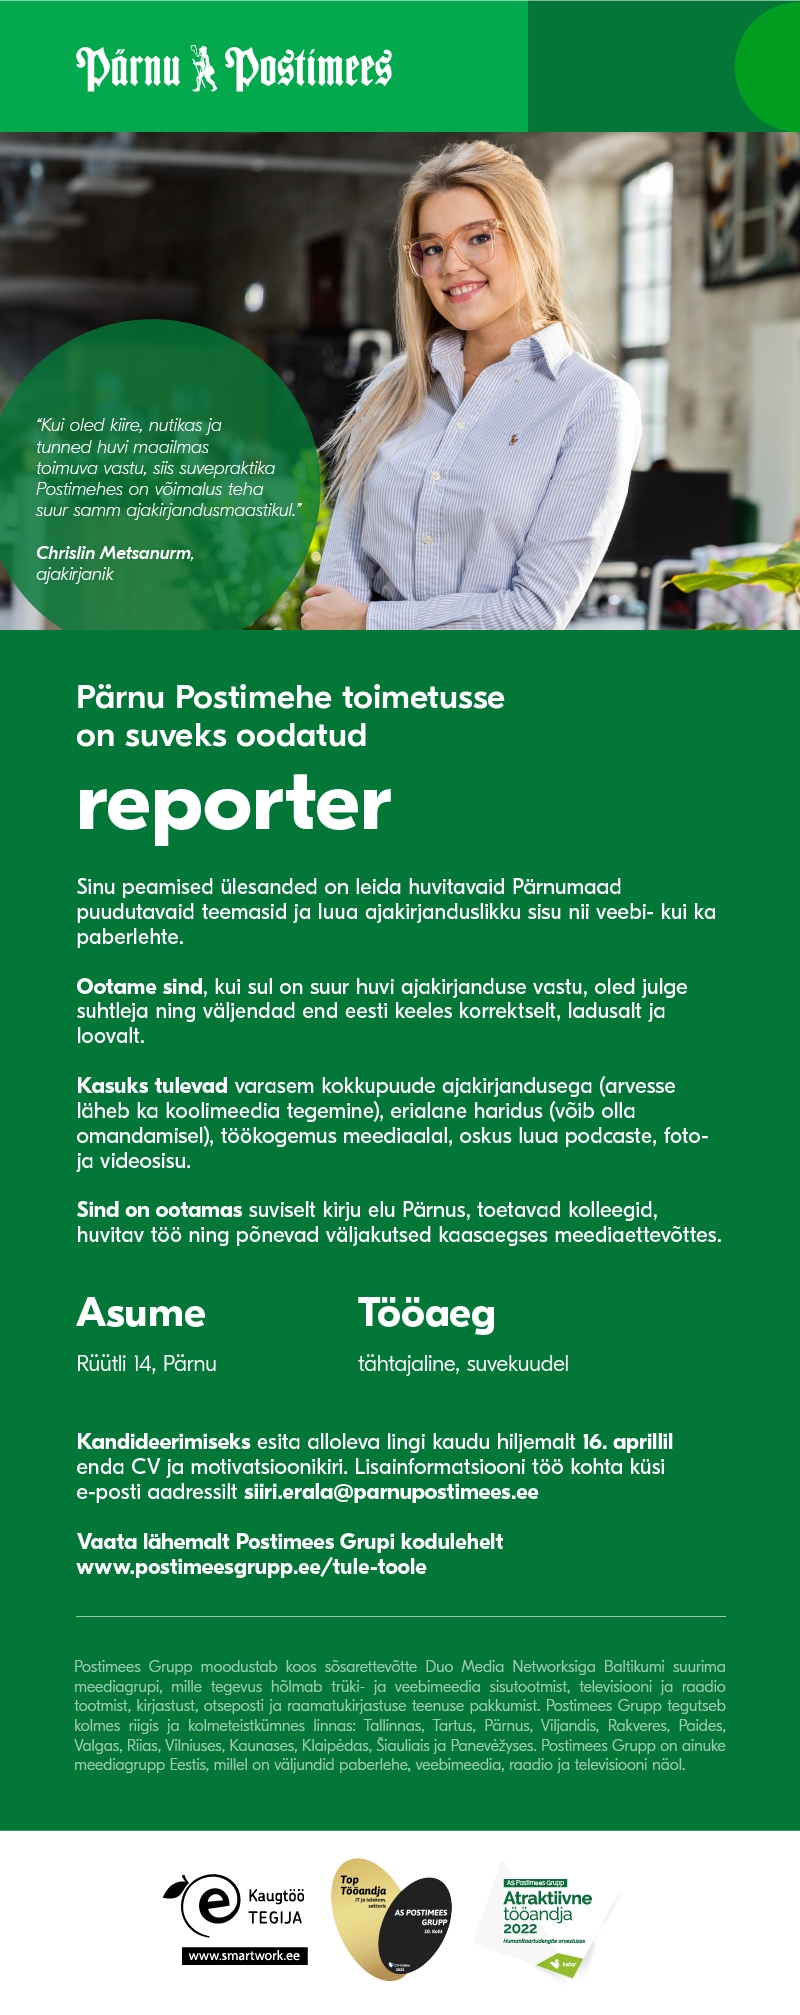 CVKeskus.ee klient Pärnu Postimehe suvereporter